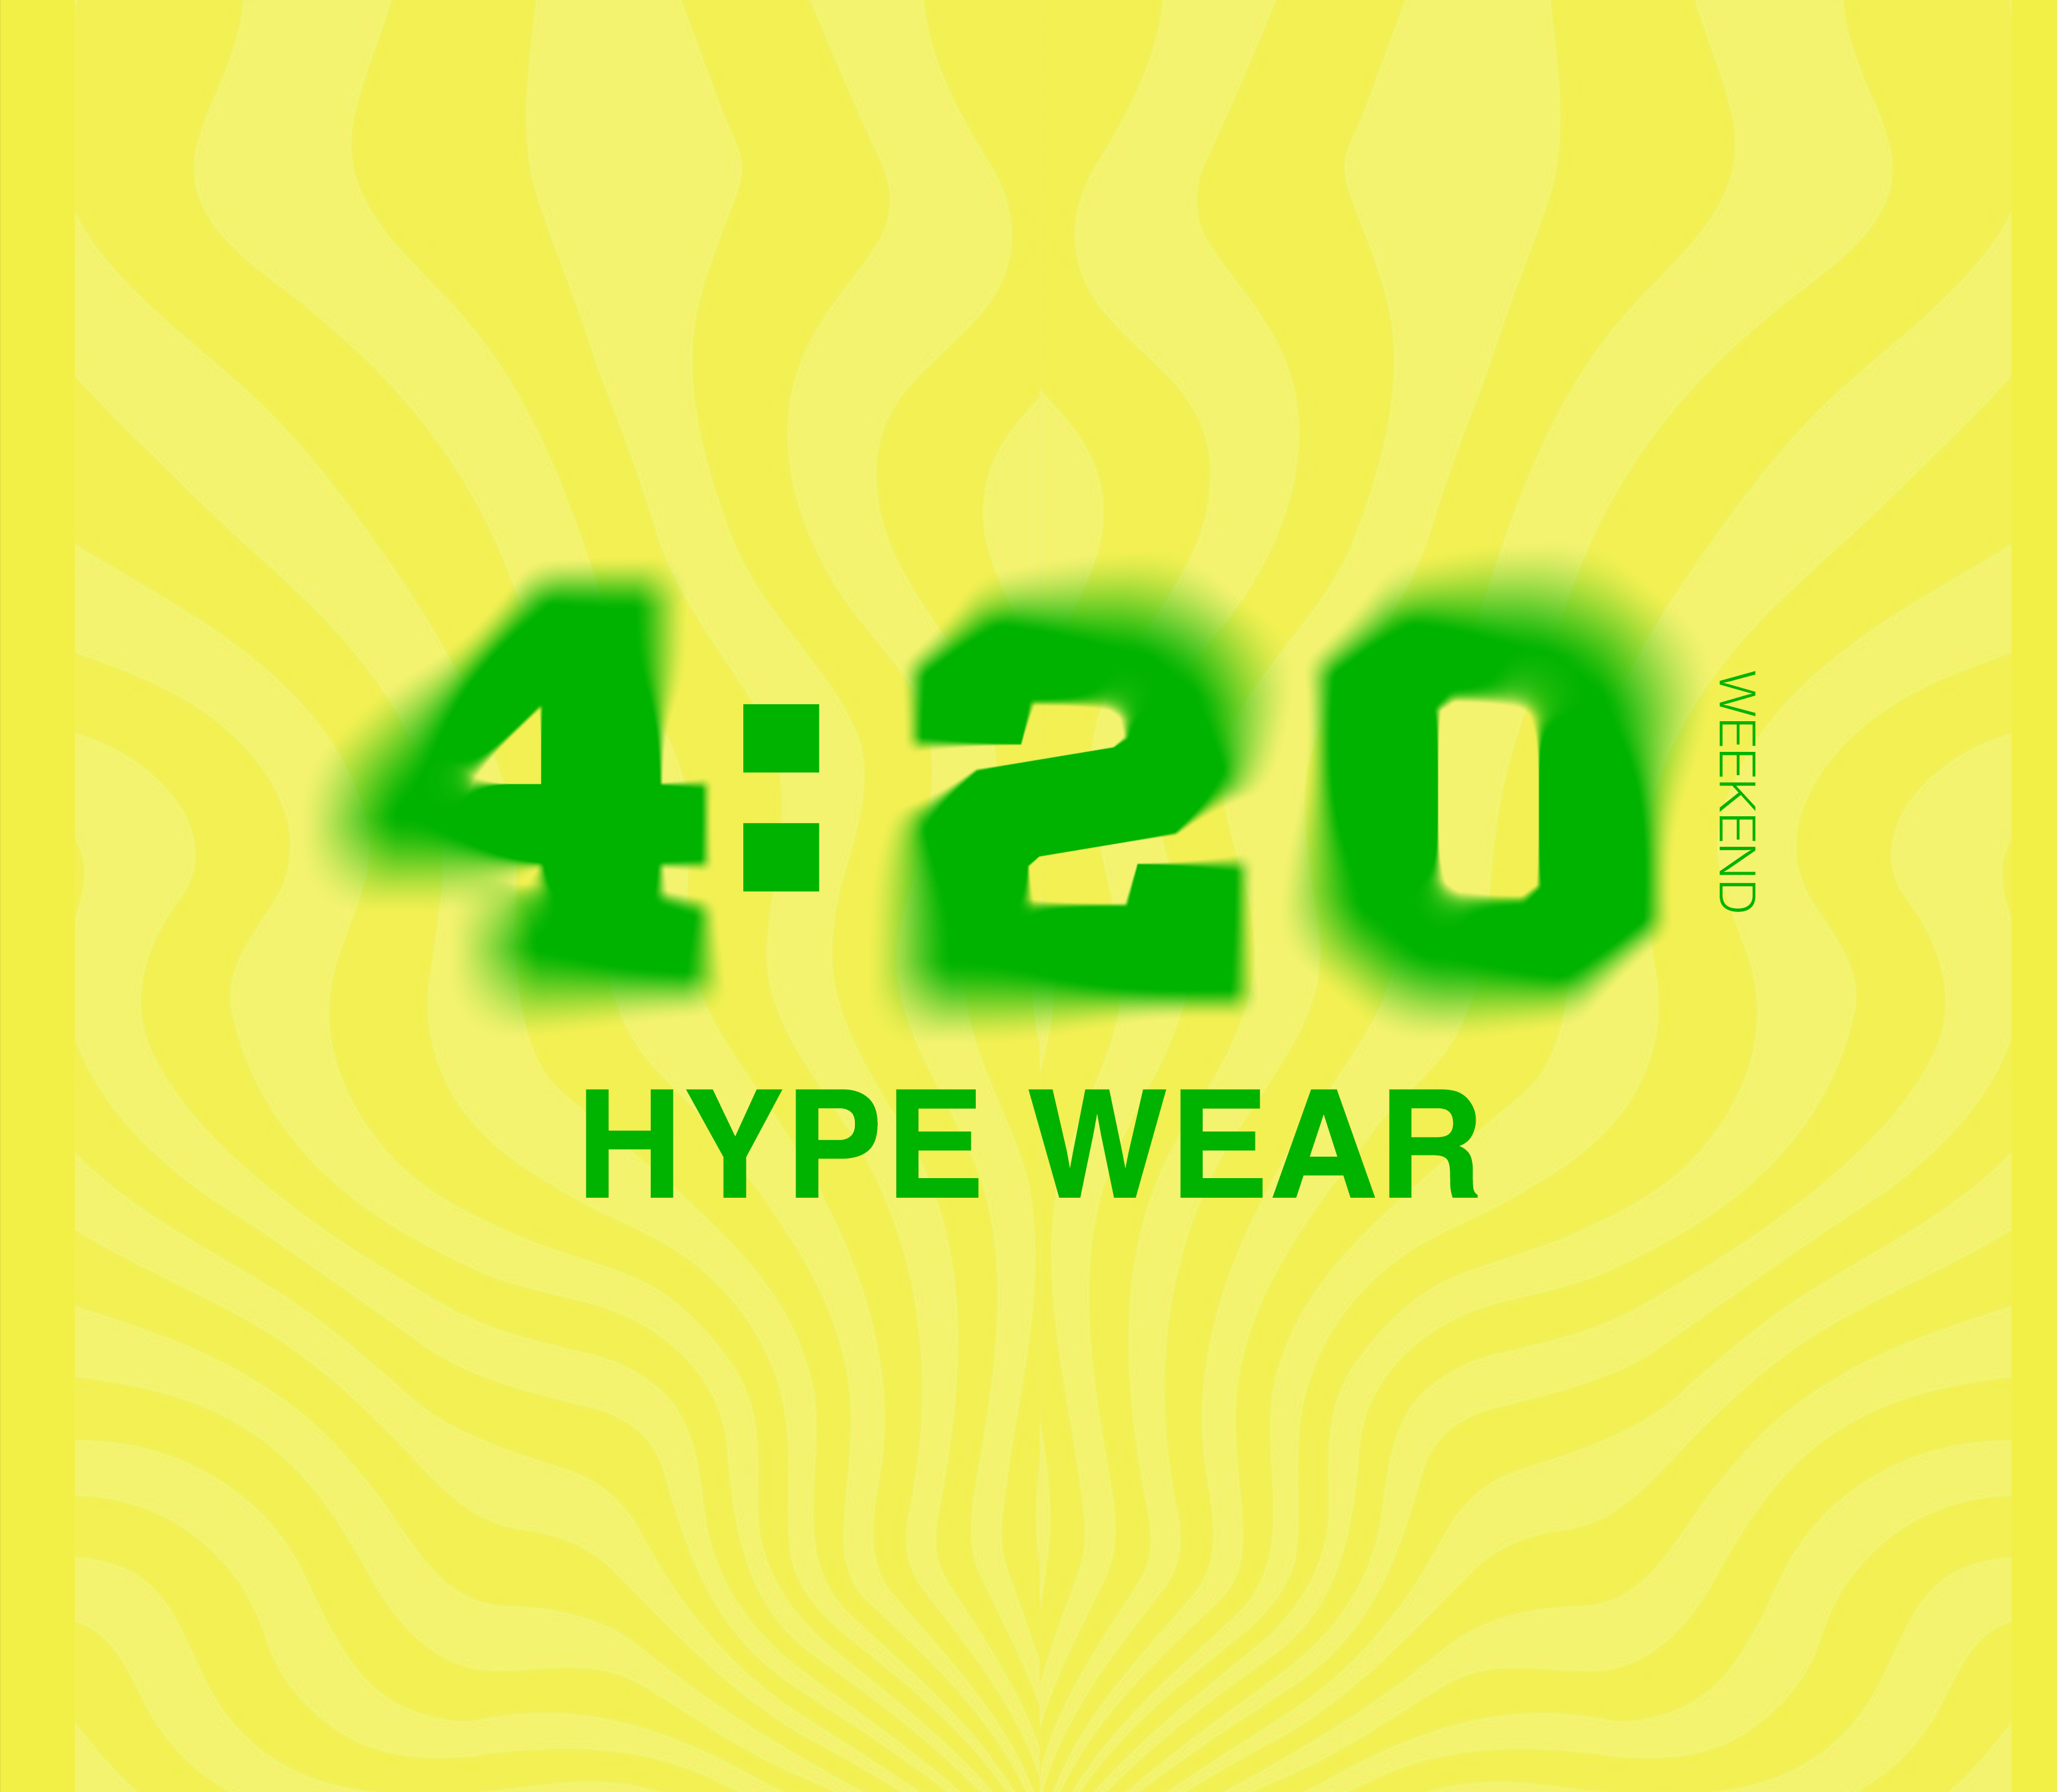 420 HYPE WEAR